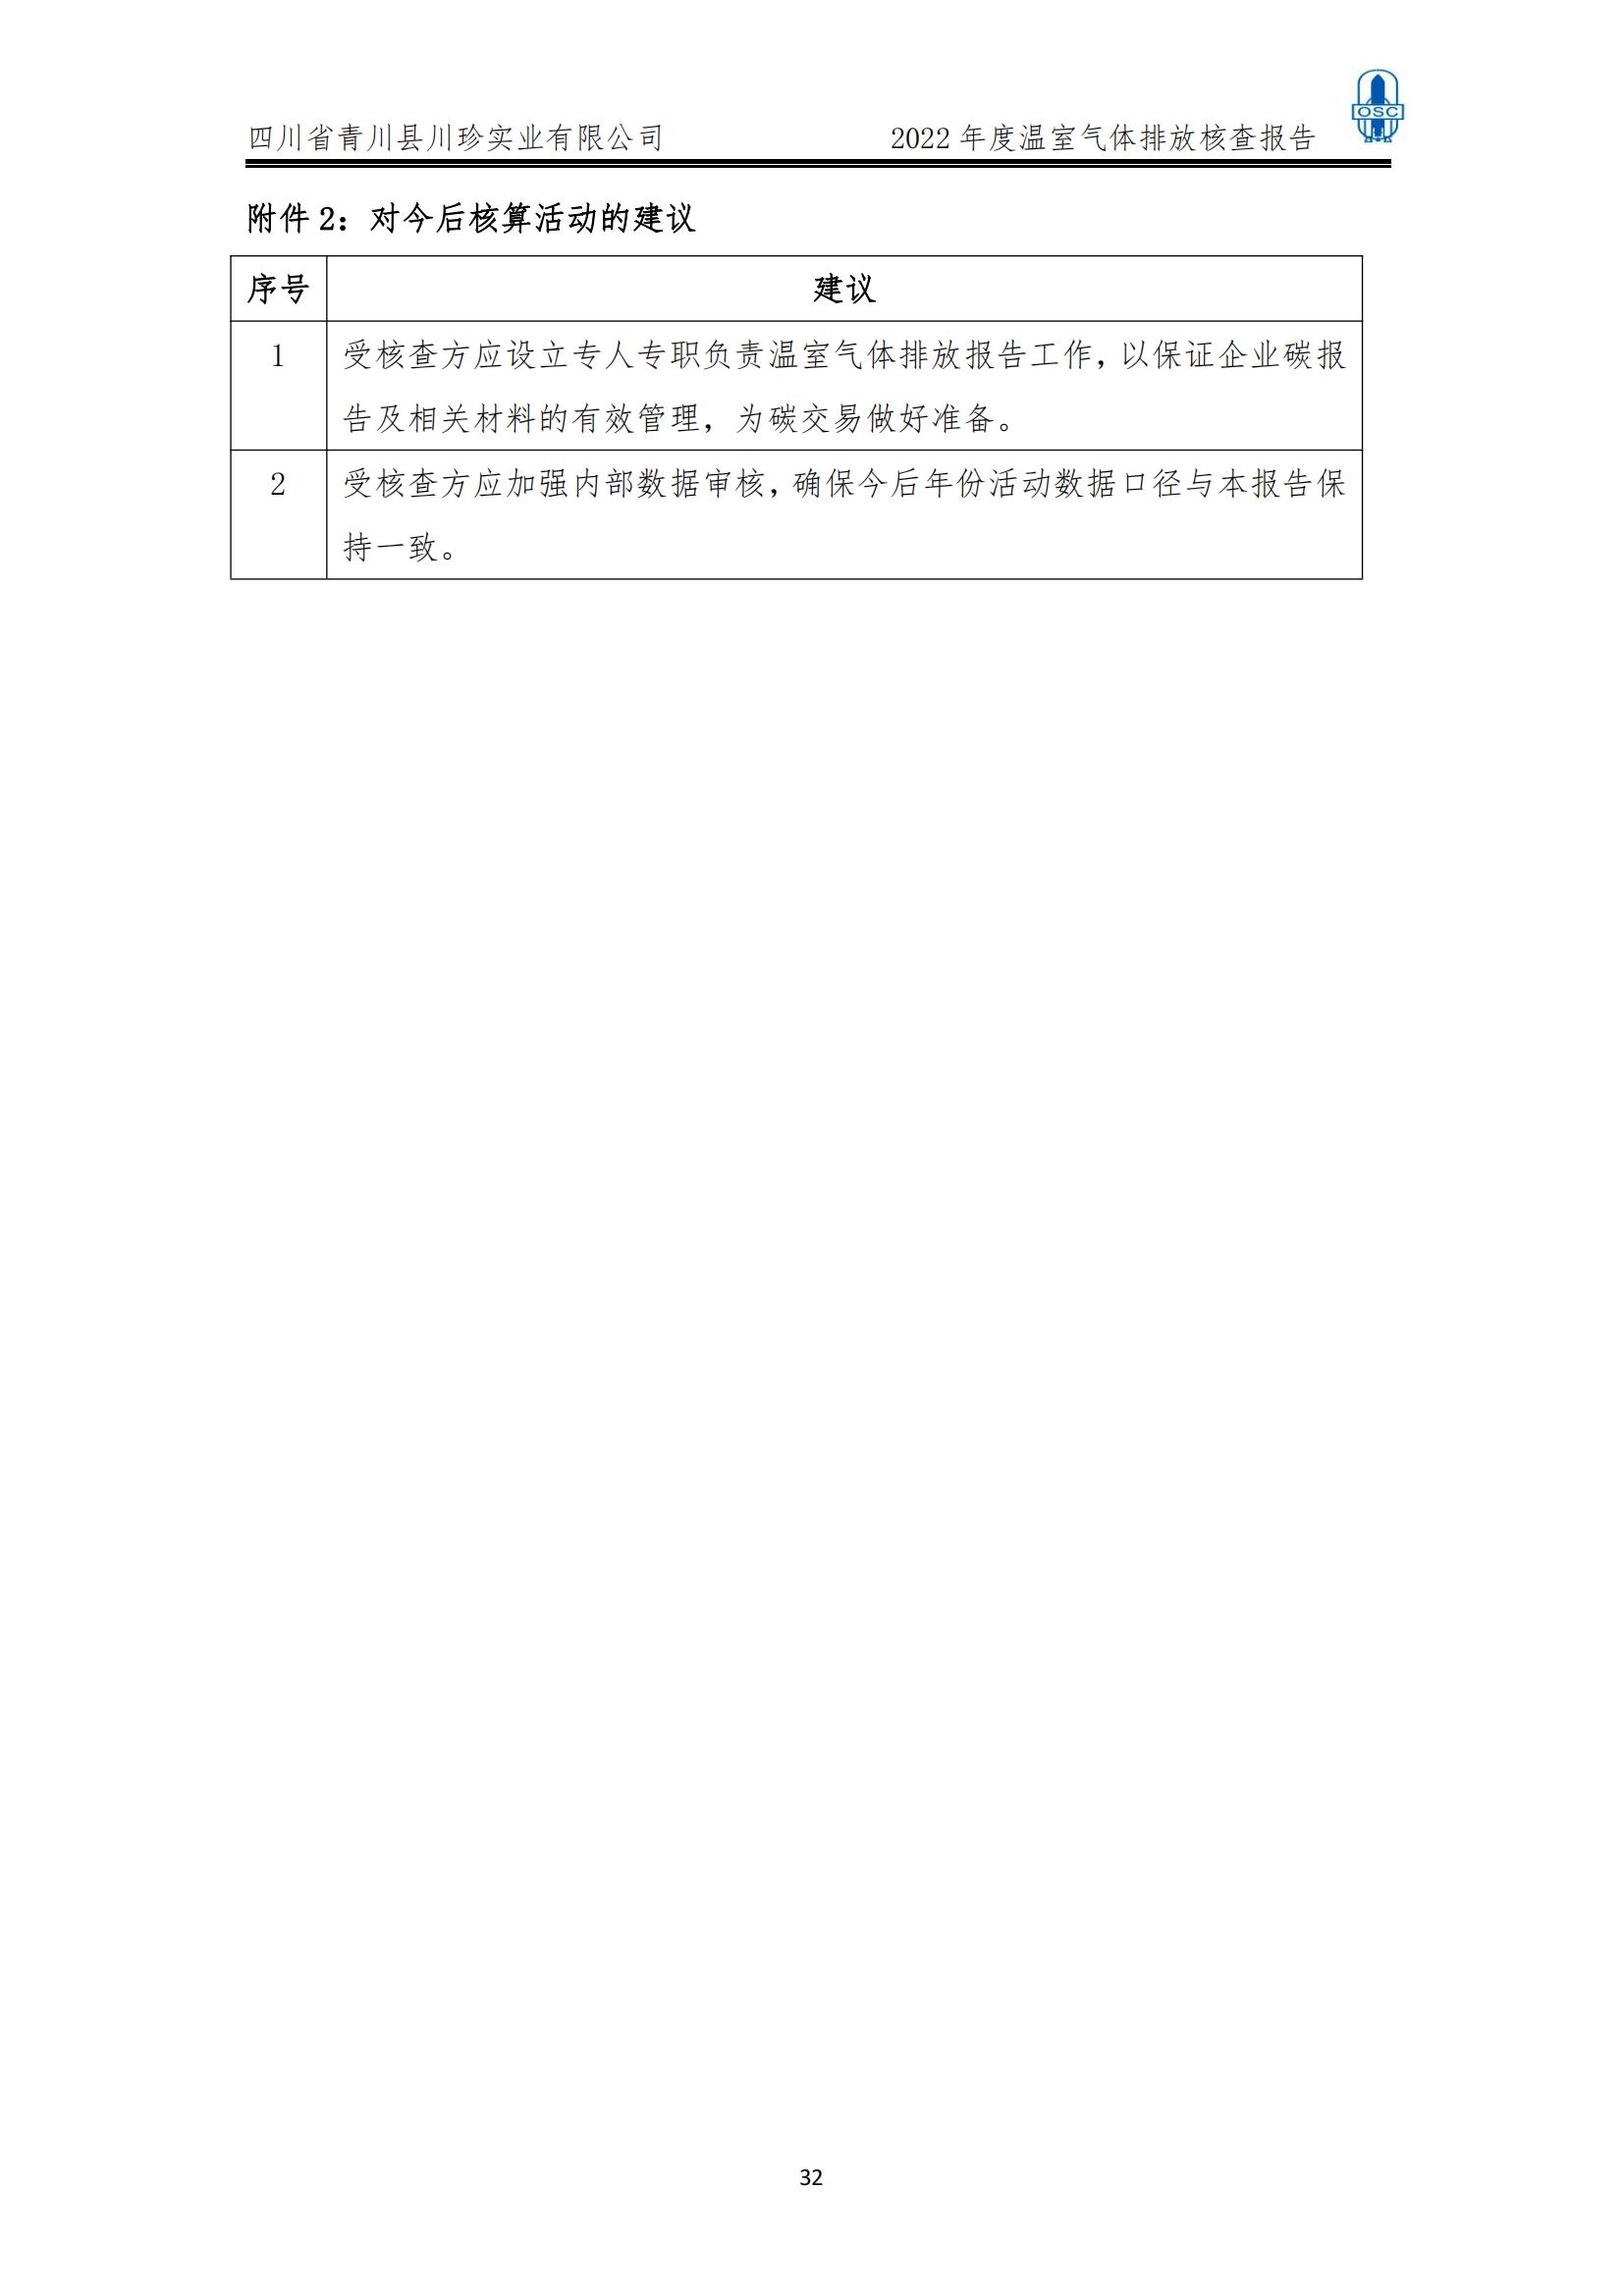 2022年度温室气体核查报告(四川省青川县川珍实业有限公司(图33)